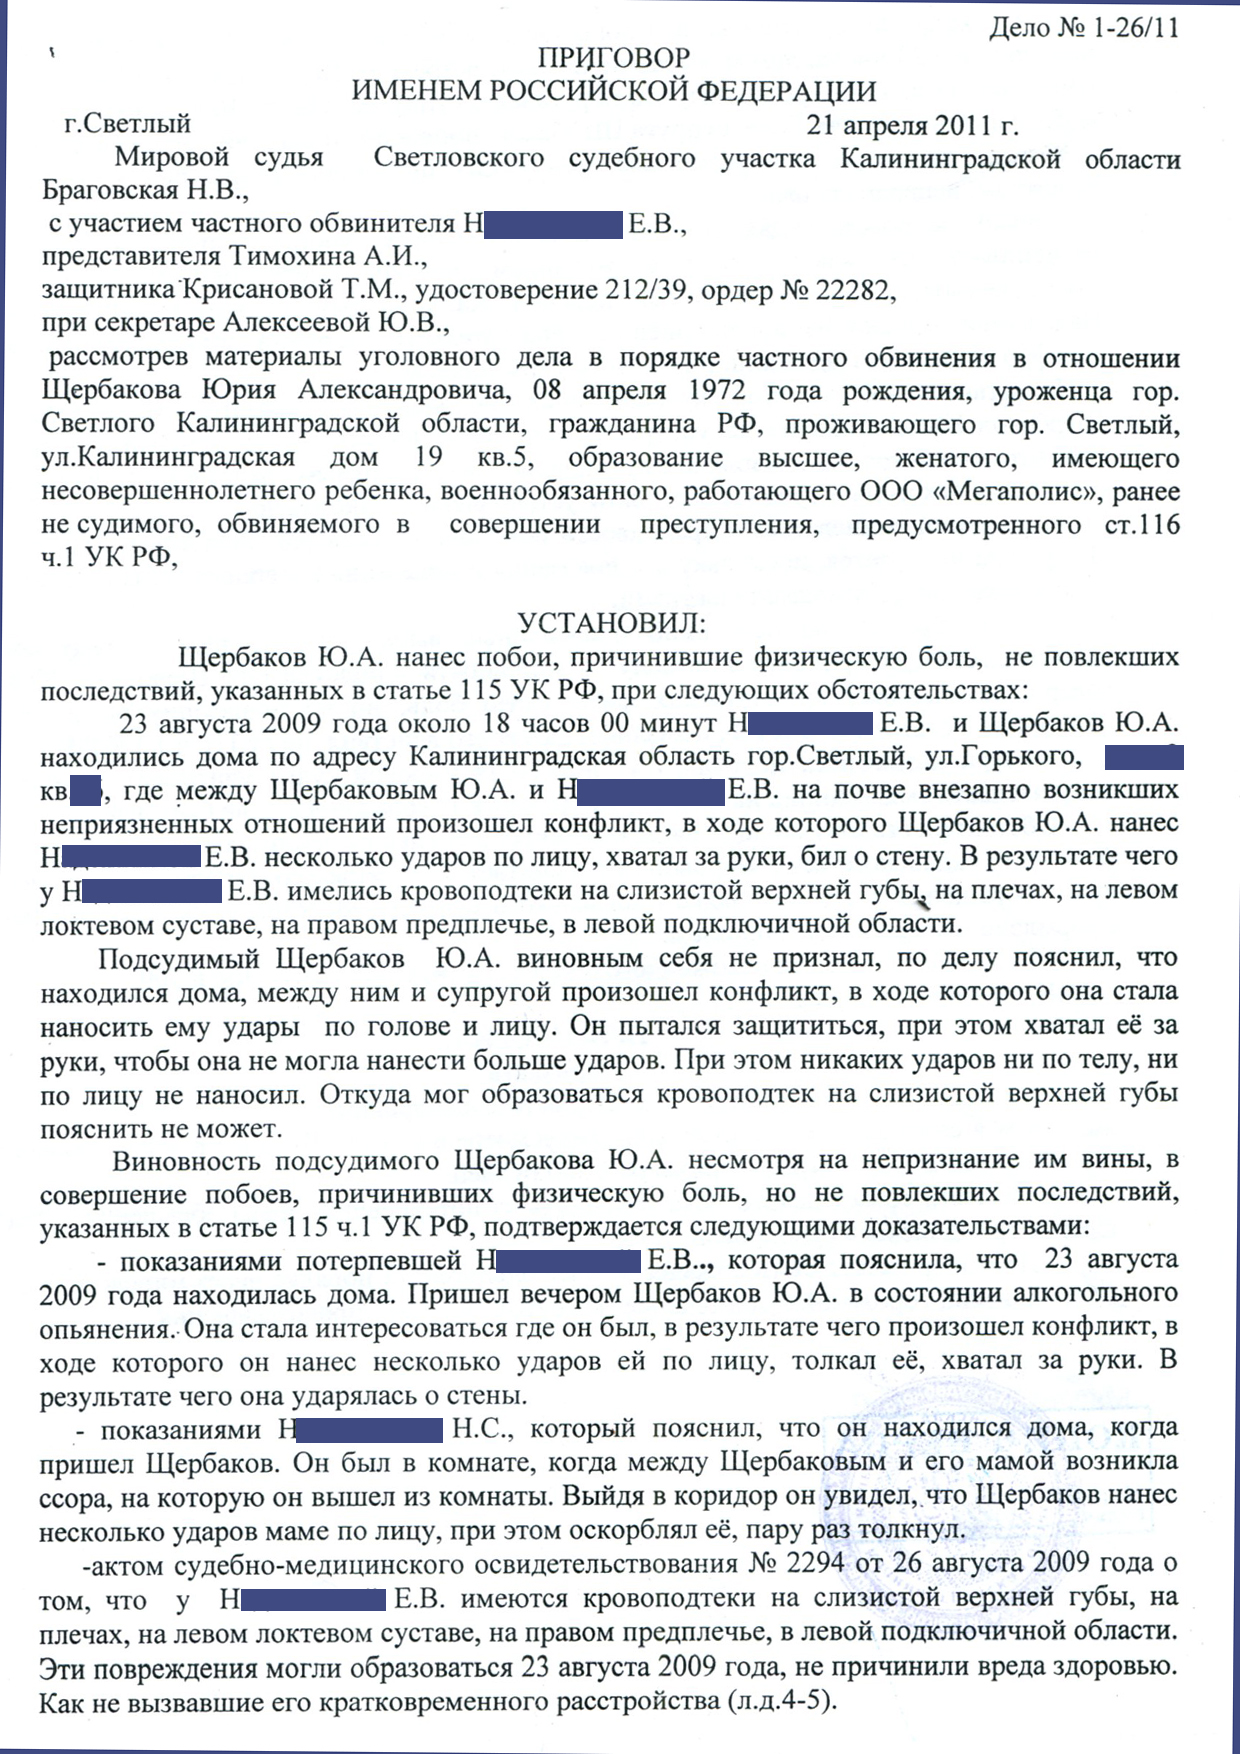 Статья 116.1 уголовного кодекса Российской